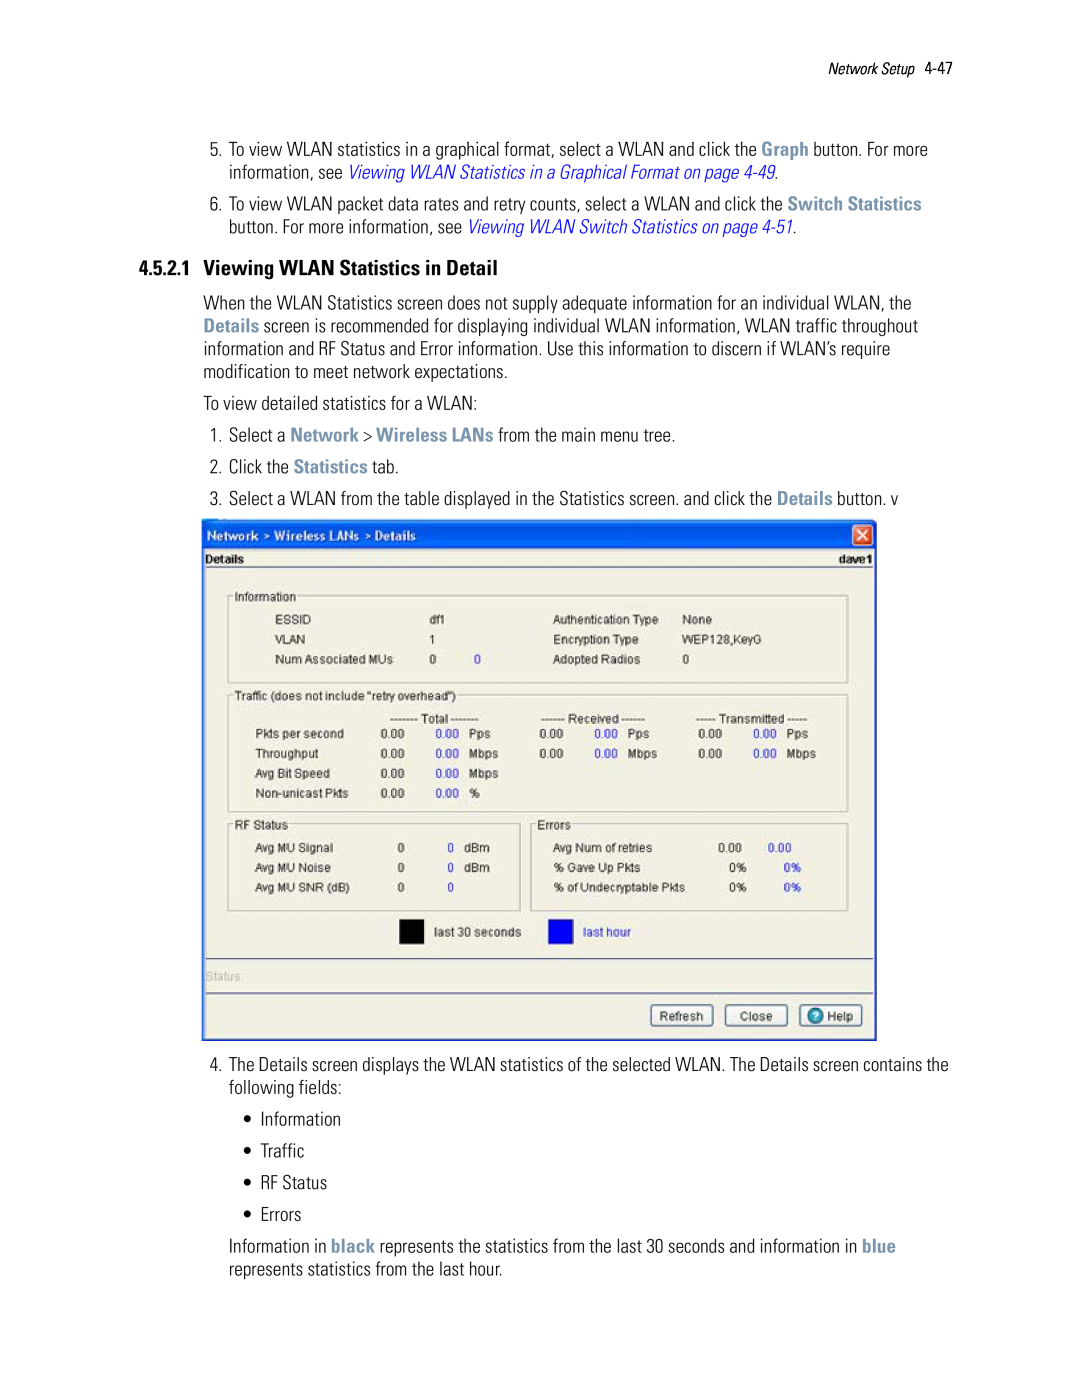 Motorola WS5100 manual 4.5.2.1Viewing WLAN Statistics in Detail 